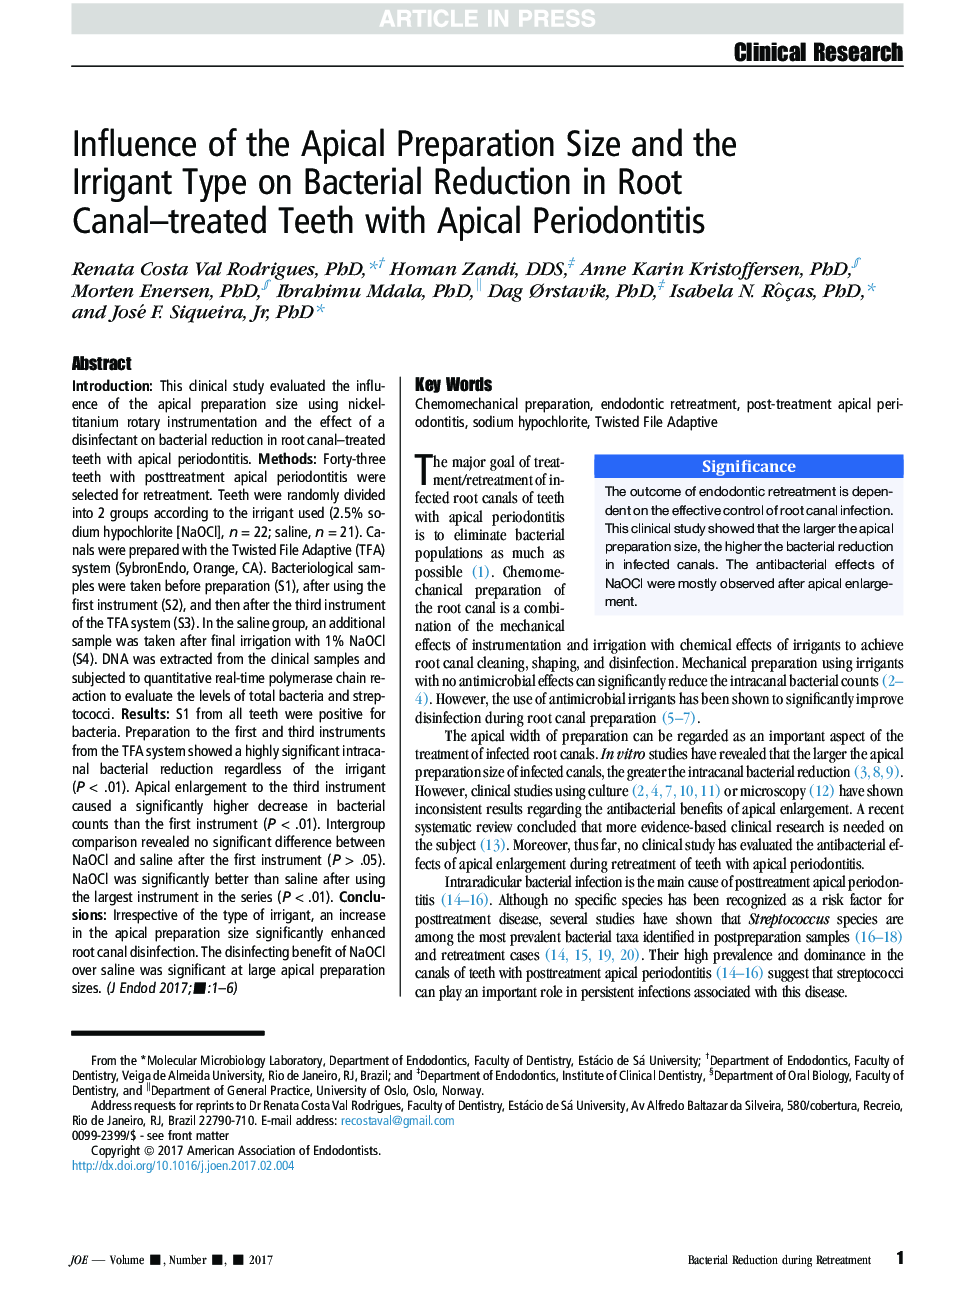 تأثیر اندازه آماده سازی آپیکالی و نوع آبیاری بر کاهش باکتریال در دندانهای تحت درمان کانال ریشه با پریودنتال آپیکال 